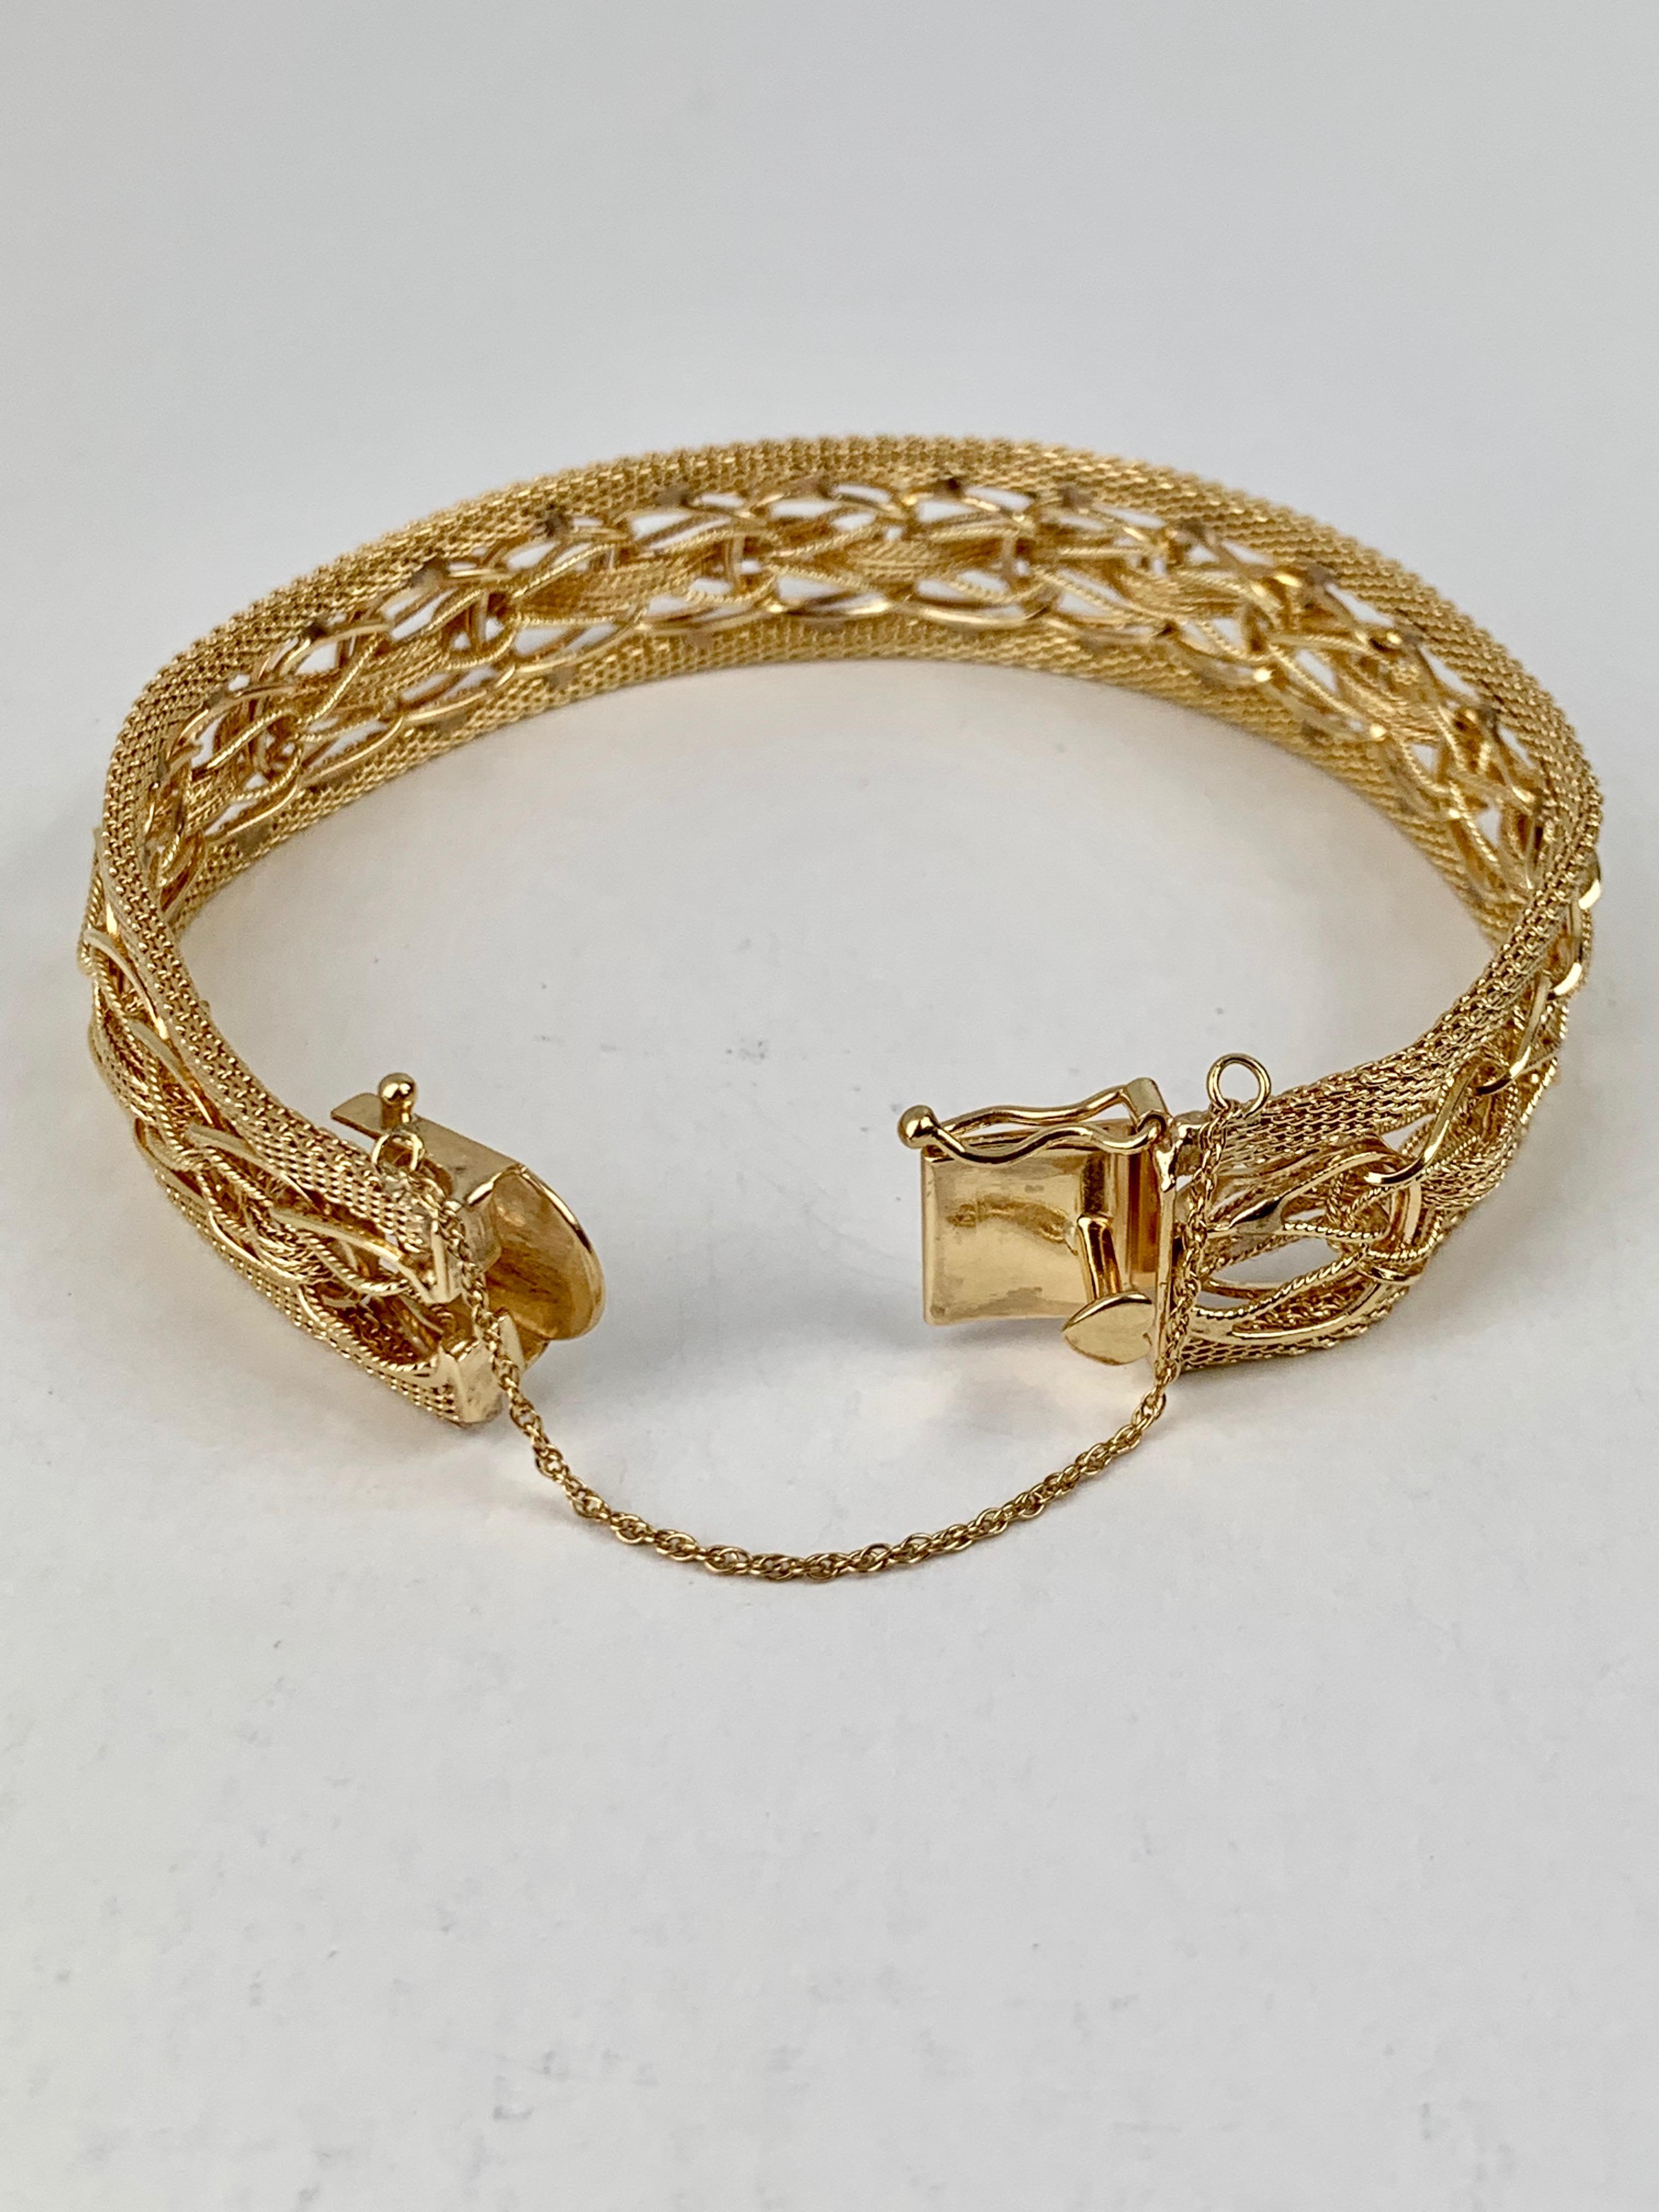 Bracelet en maille d'or jaune 14 carats massif avec fermoir de pouce en forme de cœur, fermoir en forme de huit et chaîne de sécurité sur le côté. La maille est assez intéressante et partiellement tissée à la main. Le bracelet est clairement marqué